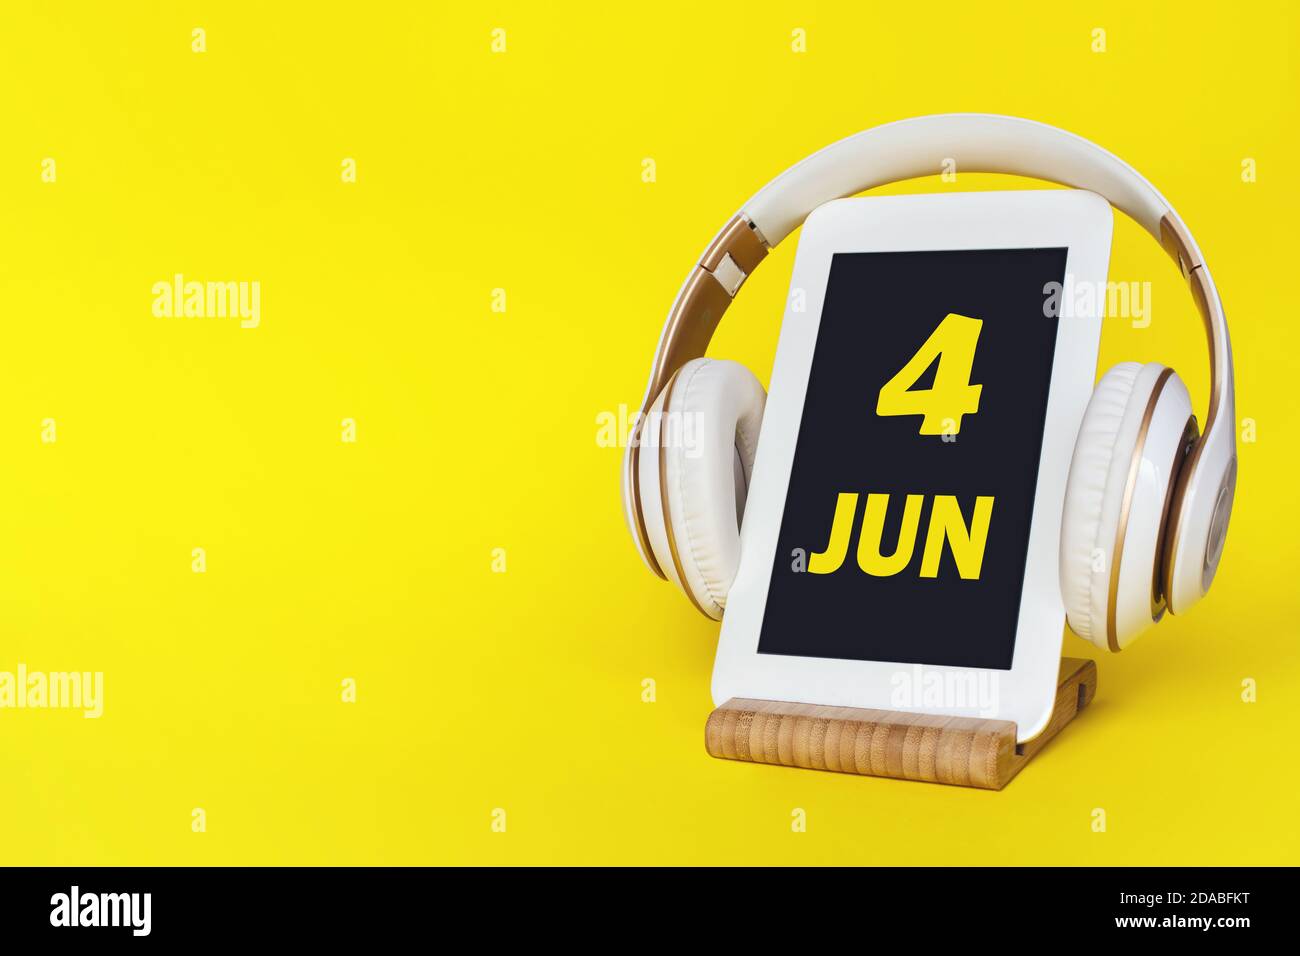 4 juin. Jour 4 du mois, date du calendrier. Casque élégant et tablette moderne sur fond jaune. Espace pour le texte. Éducation, technologie, style de vie. Banque D'Images